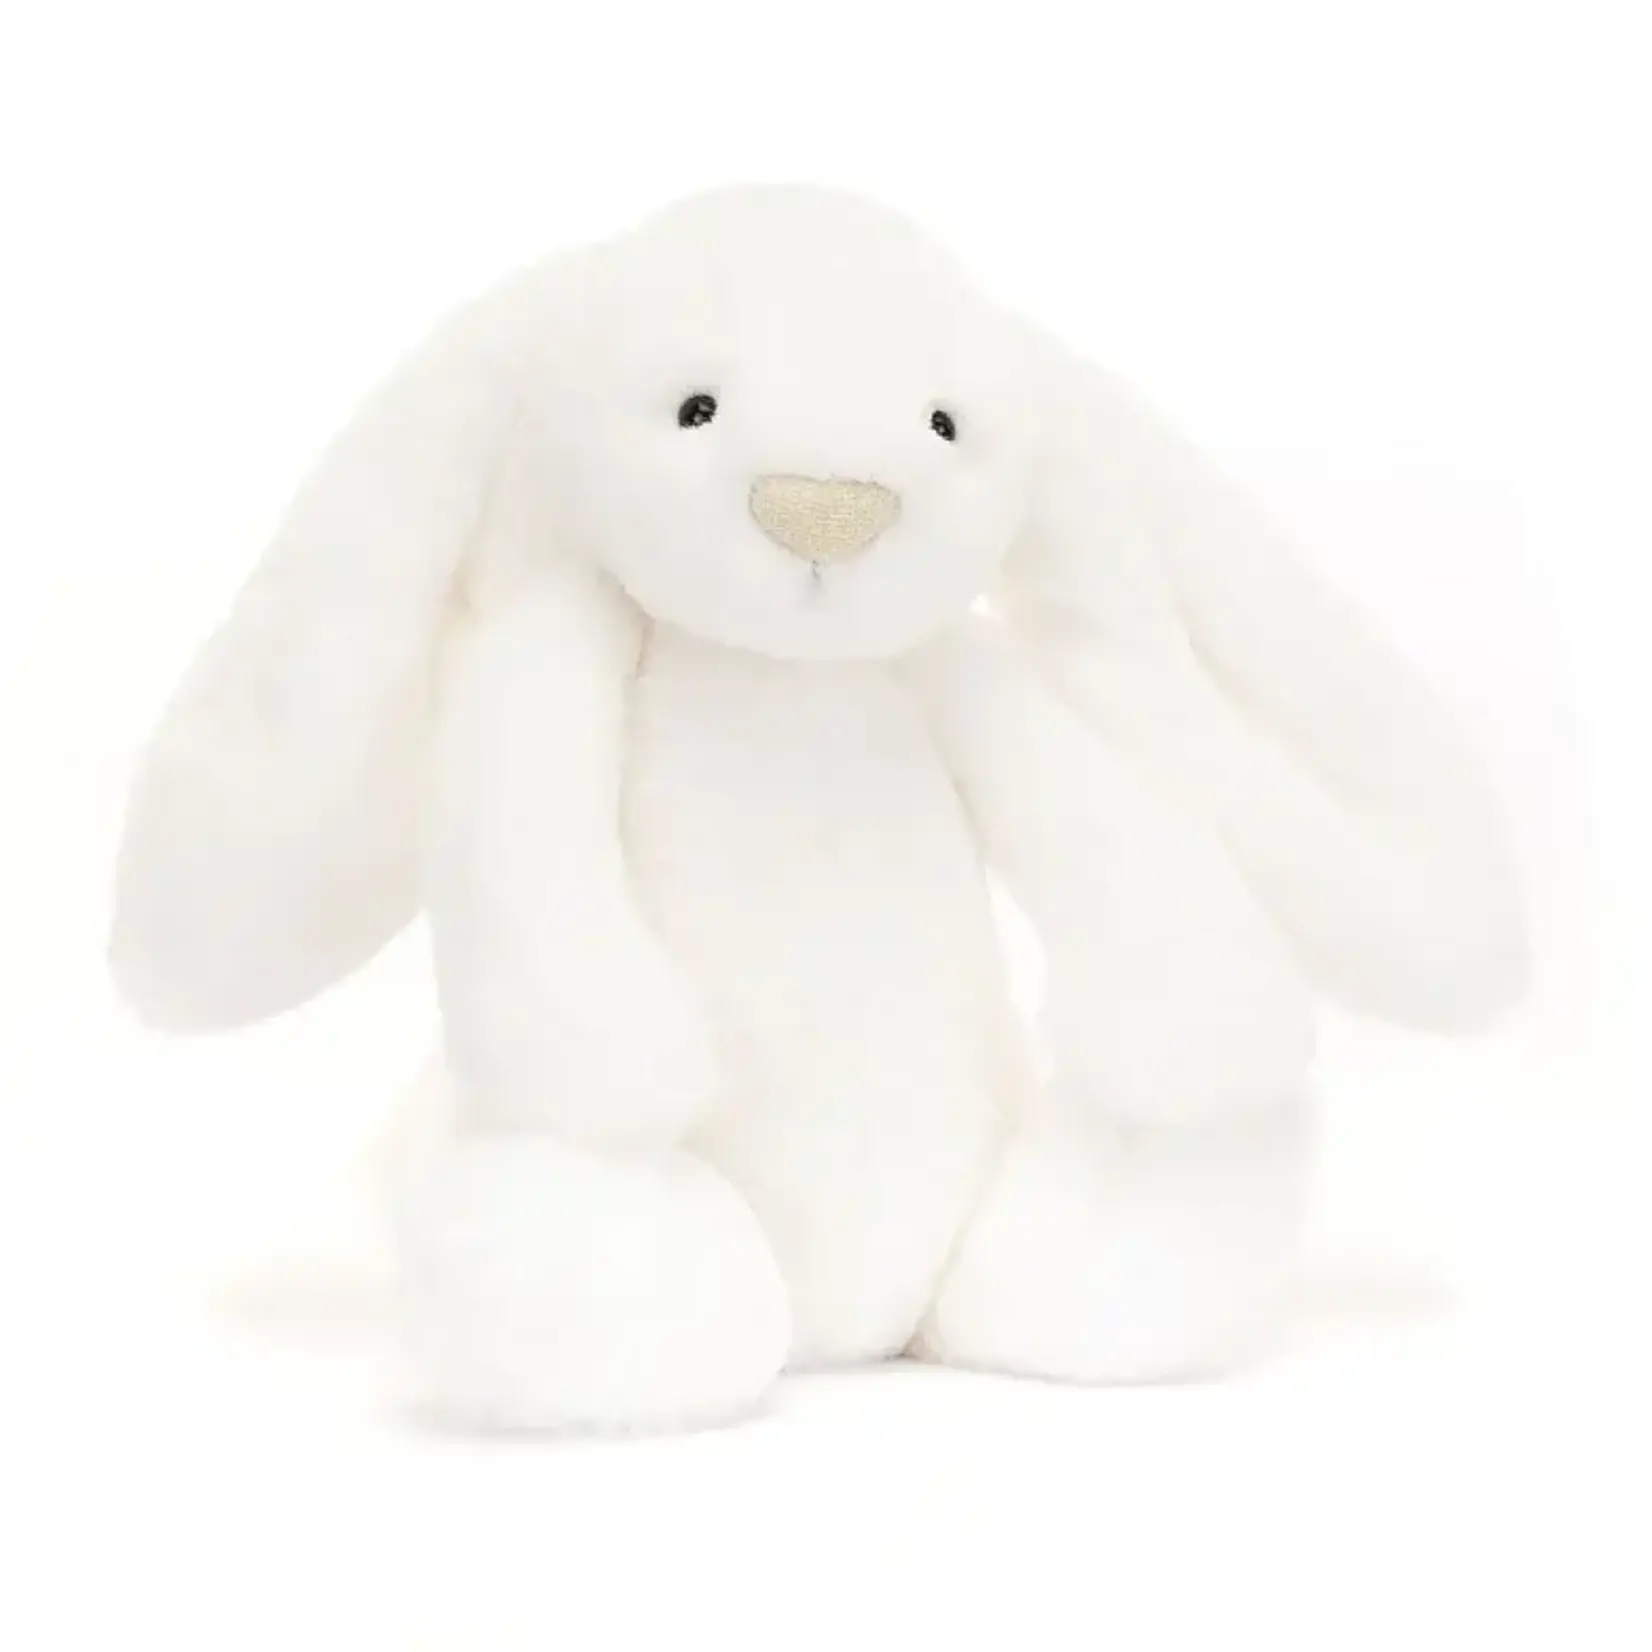 Jellycat Bashful Luxe Bunny Luna Original (Medium)